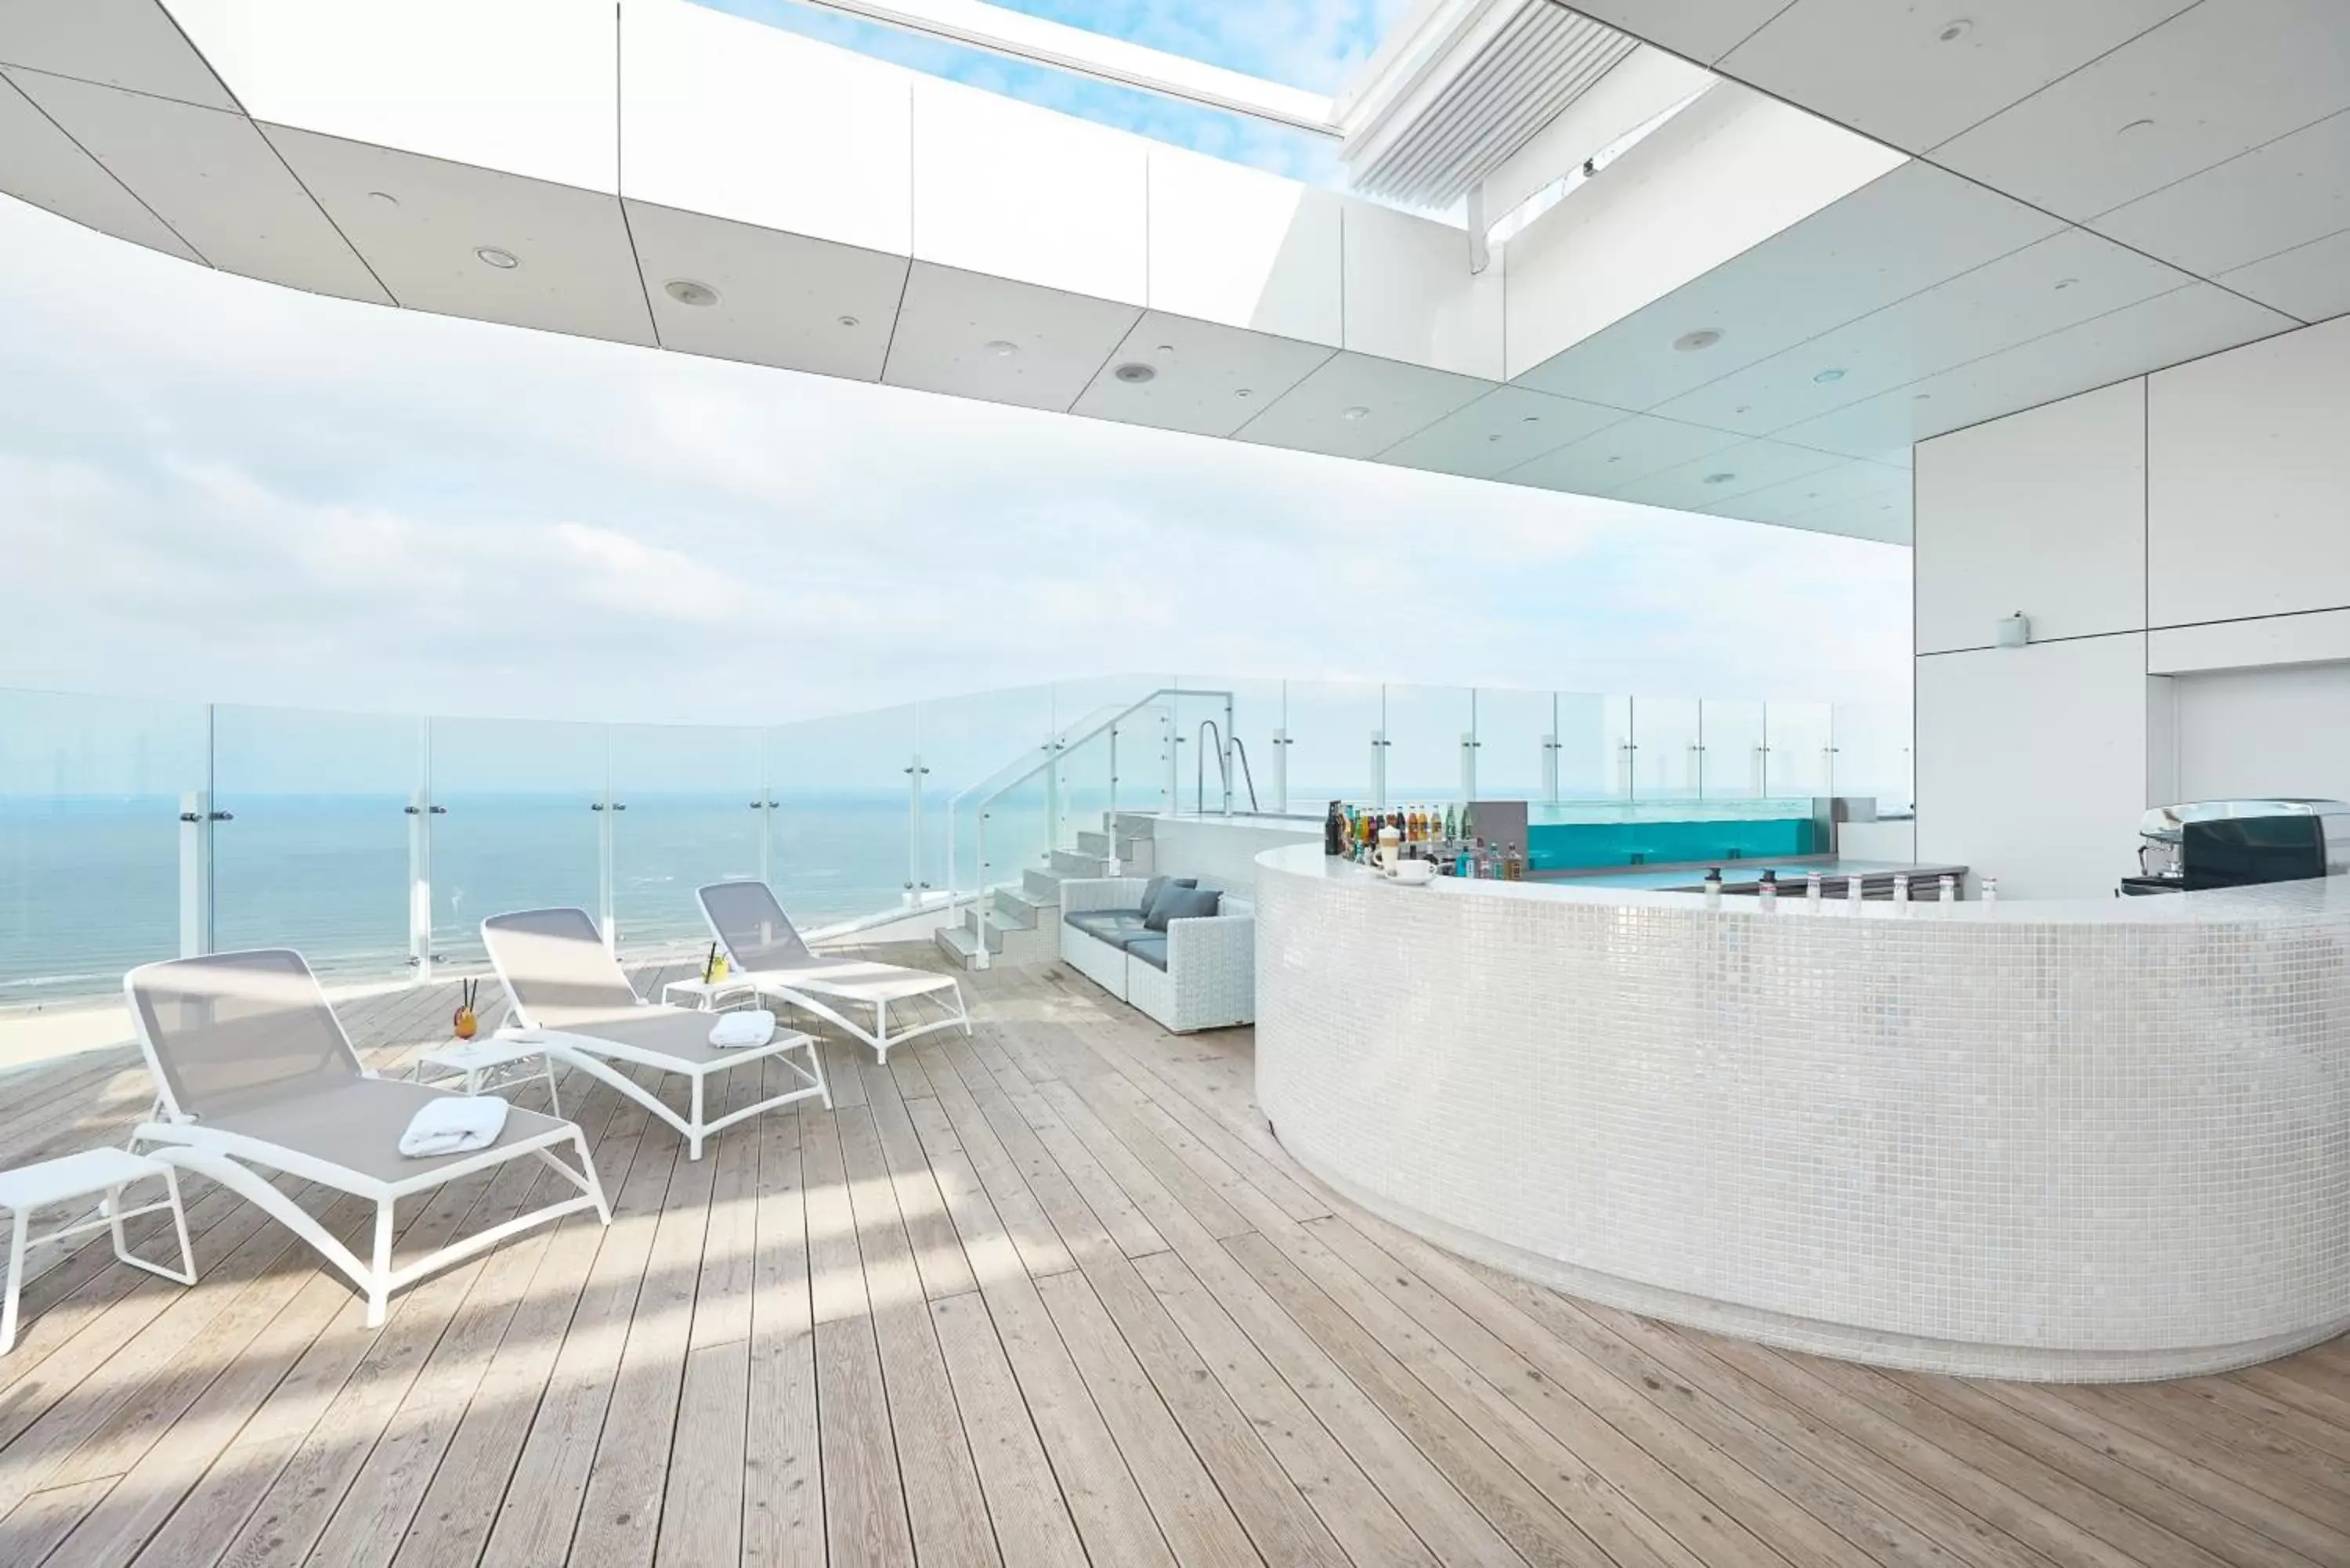 Balcony/Terrace, Swimming Pool in Radisson Blu Resort Swinoujscie